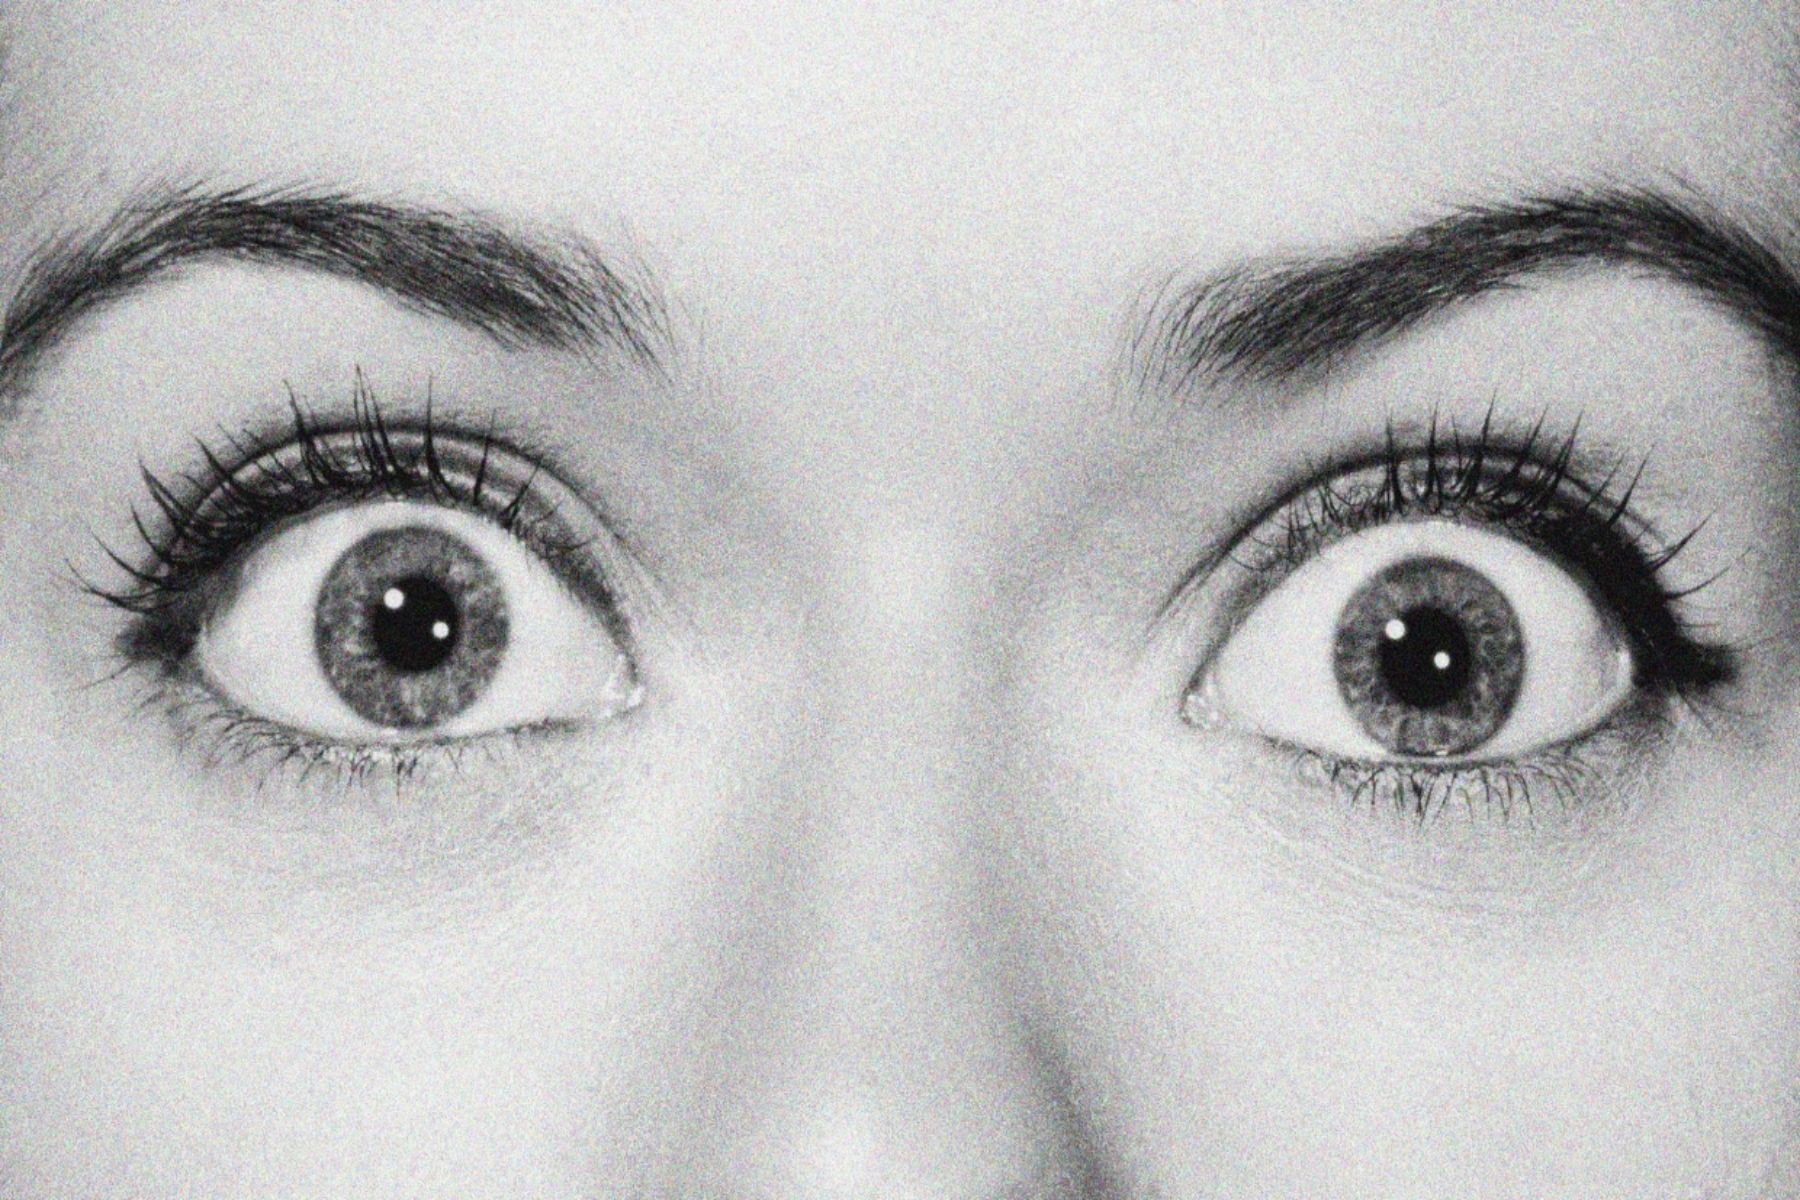 Καστορέλαιο μάτια: Φροντίστε τα μάτια σας με τον καλύτερο τρόπο χρησιμοποιώντας καστορέλαιο